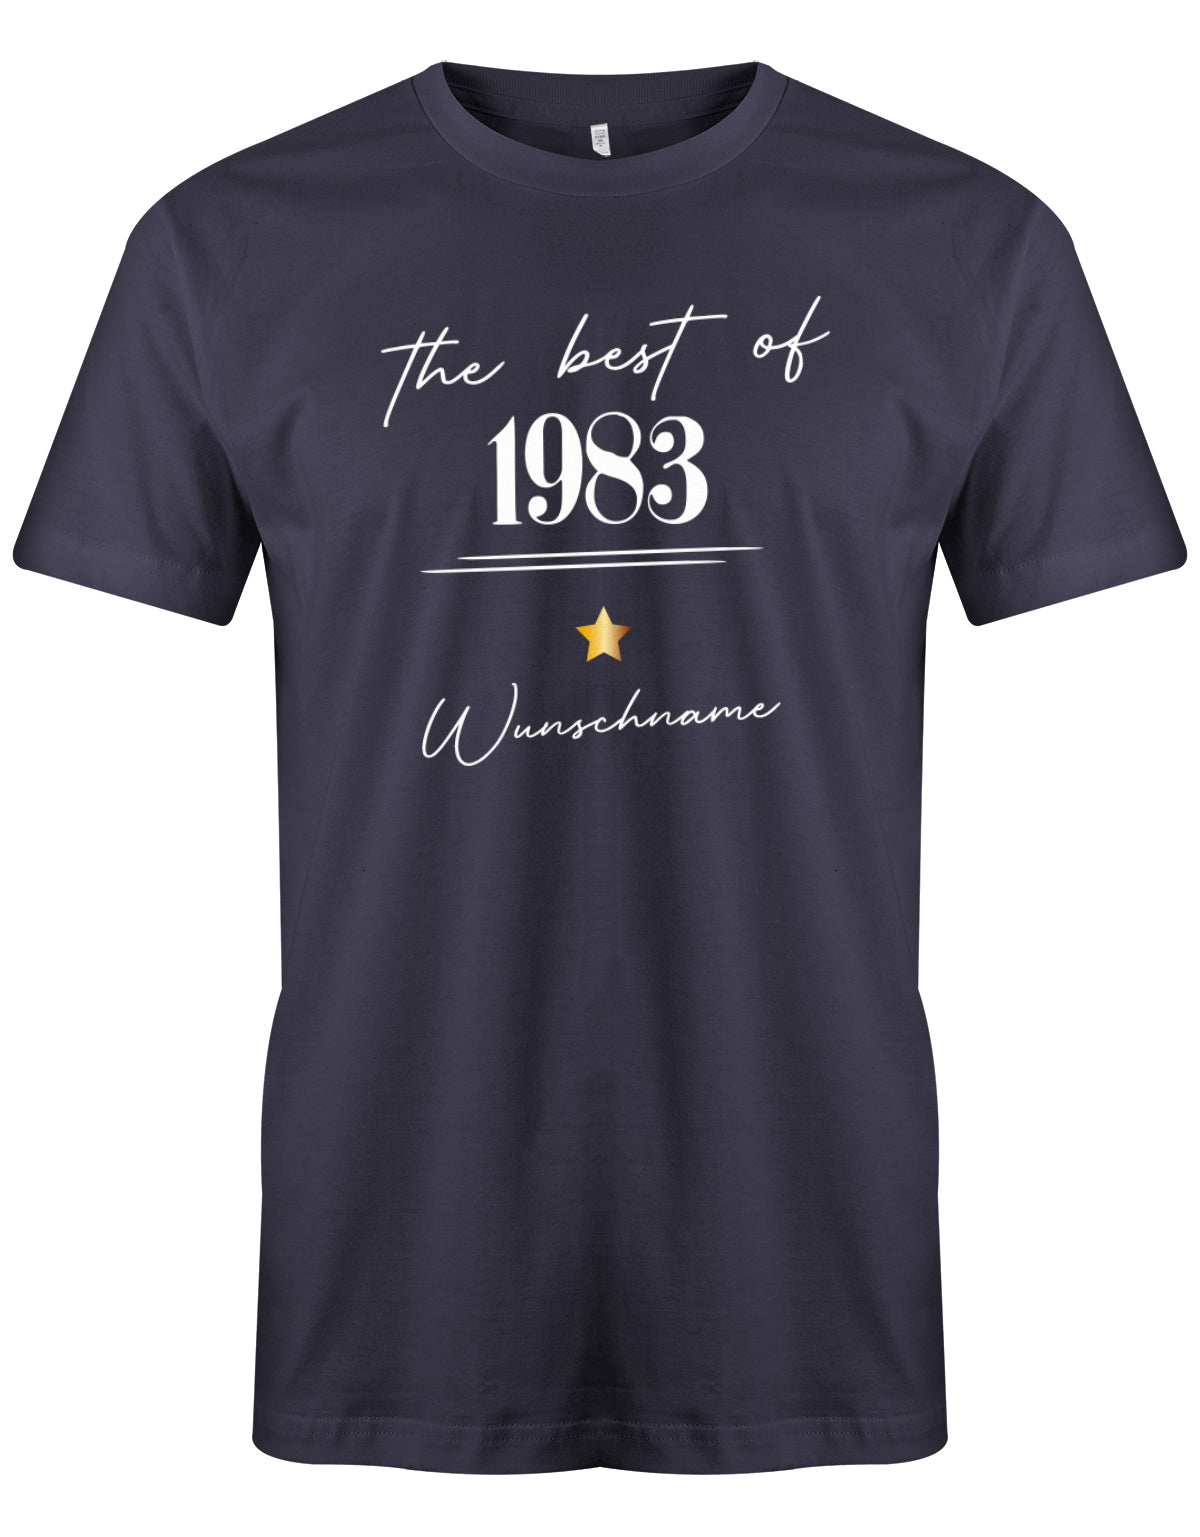 The best of 1983 Minimal mit Stern personalisiert mit Name - T-Shirt 40 Geburtstag Männer myShirtStore Navy